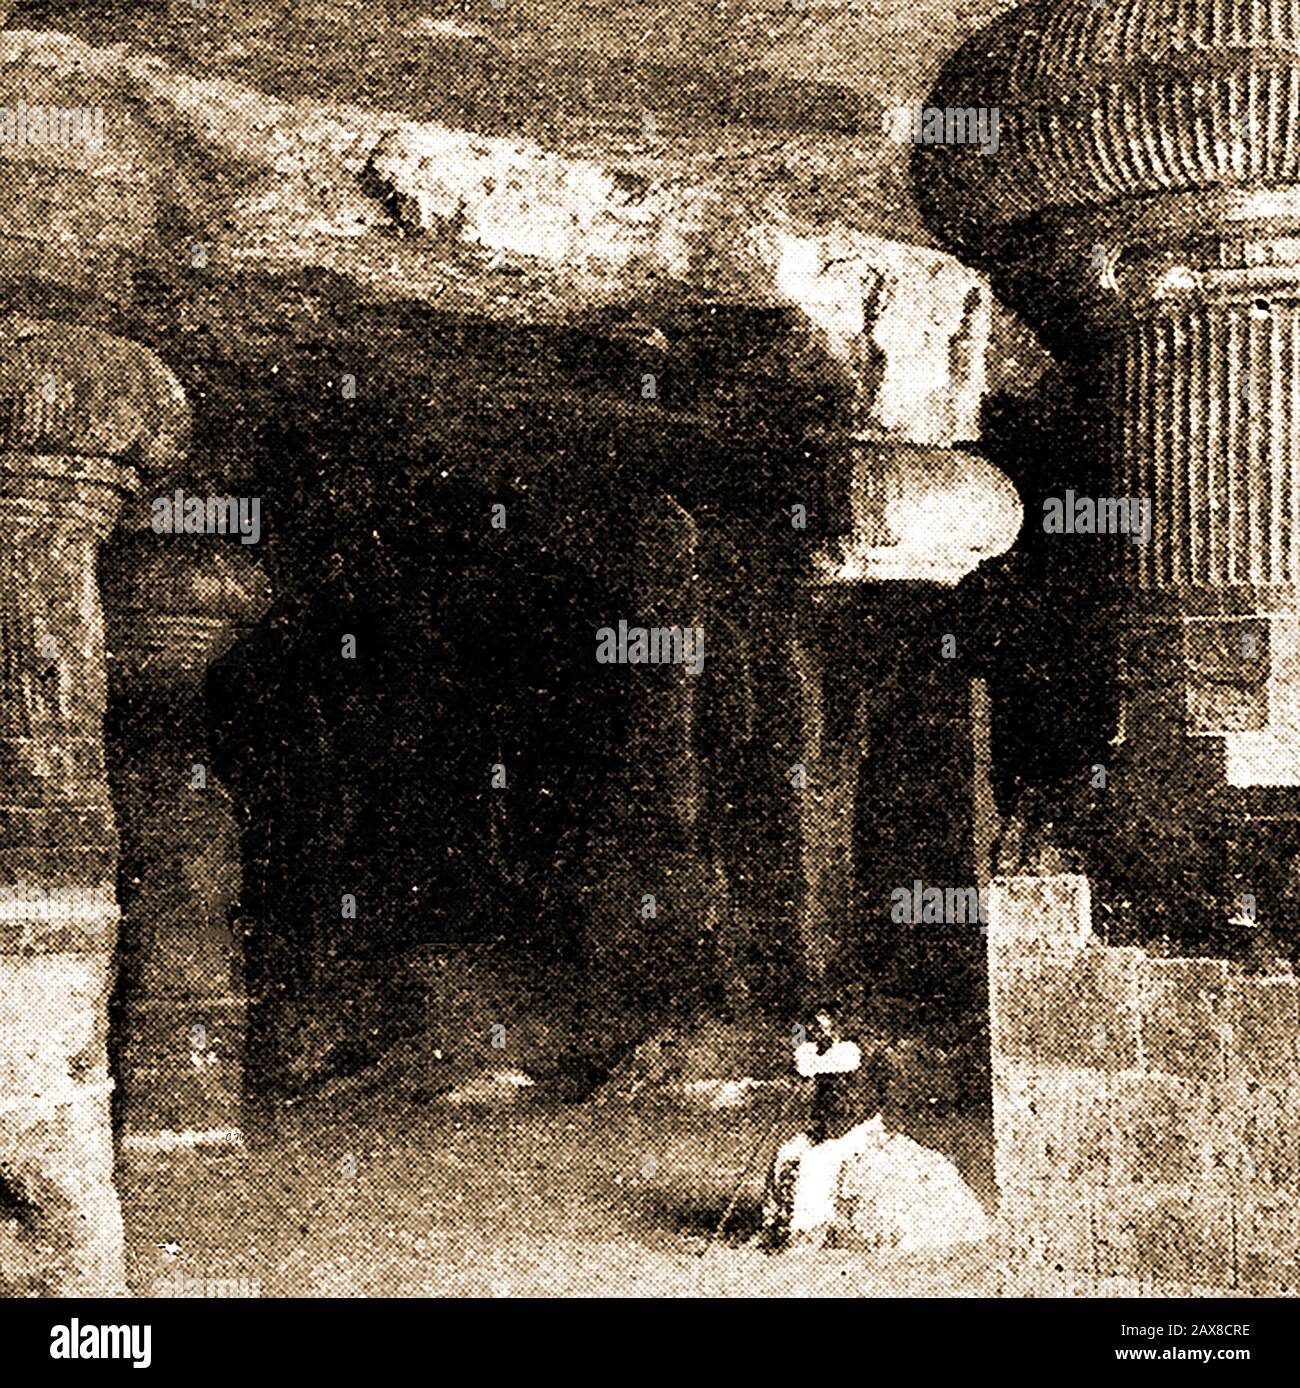 Der östliche Eingang zum Linga-Schrein im Felsenhöhnen-Tempelkomplex auf der Insel Elephanta in Indien. Diese Höhlen bestehen aus Höhlentempeln, die überwiegend dem hindu-gott Shiva gewidmet sind und zum UNESCO-Weltkulturerbe gehören Stockfoto